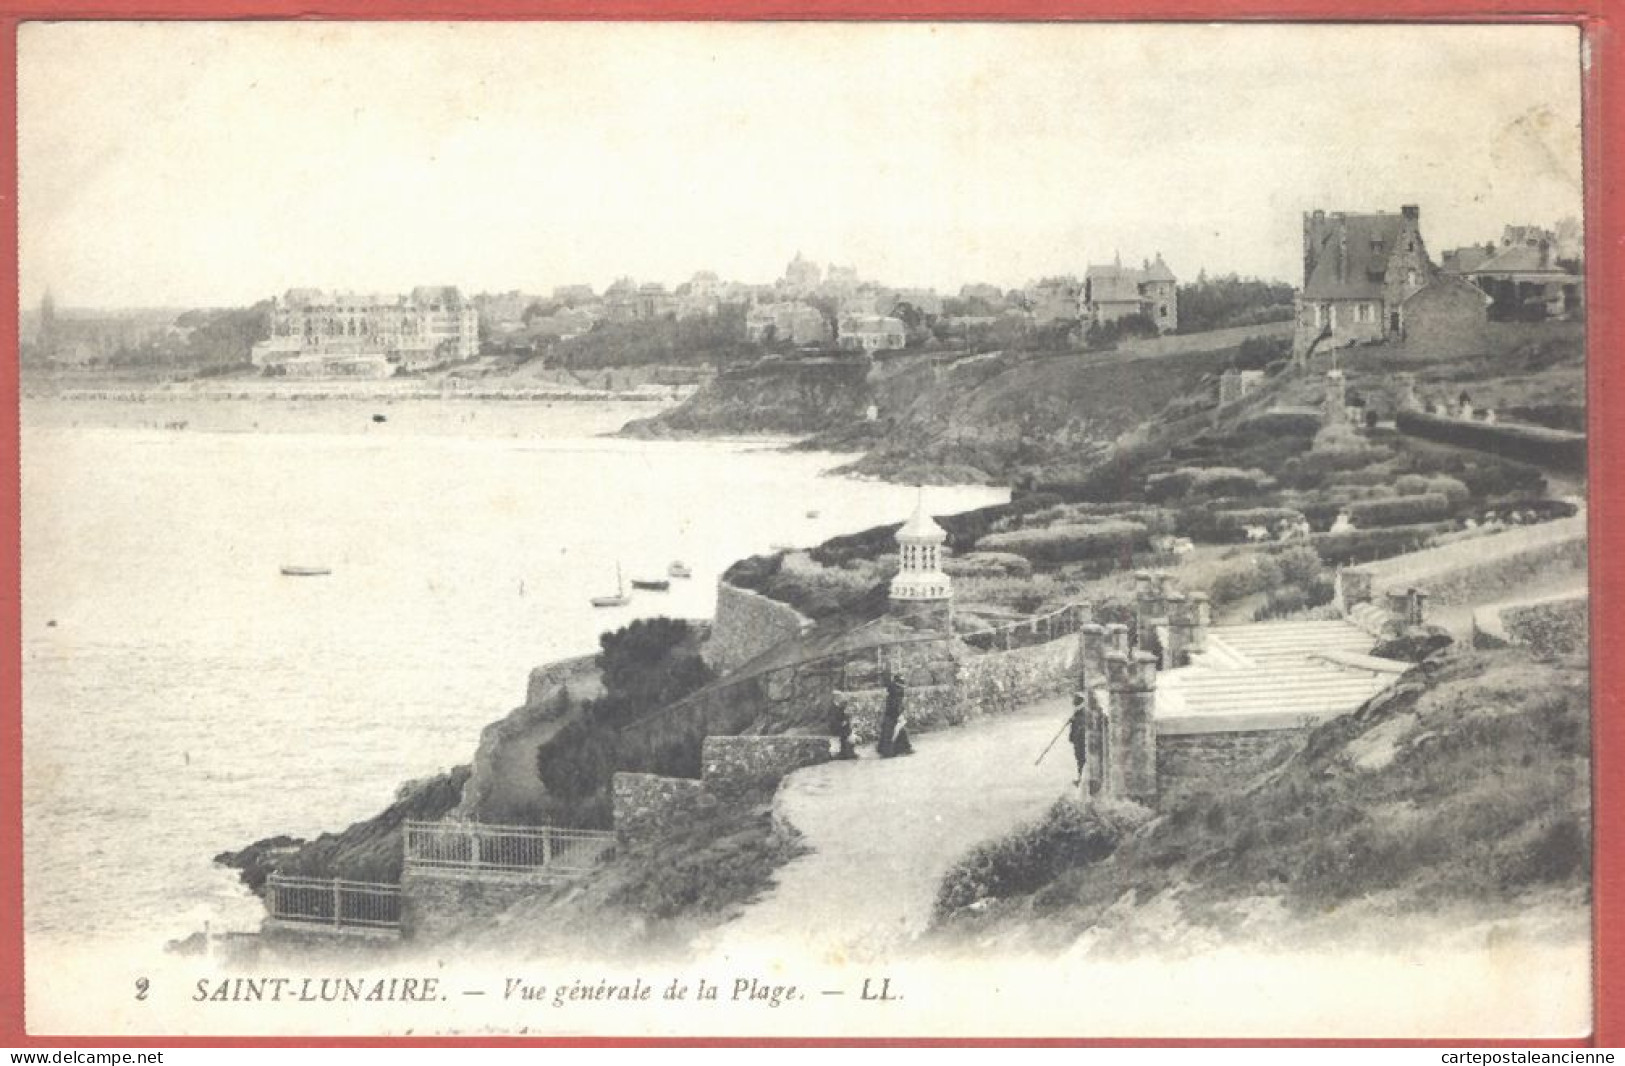 01545 / SAINT-LUNAIRE St 35-Ille Et Vilaine Vue Générale De La Plage Groupe De Villas 1912 - LEVY 2 - Saint-Lunaire